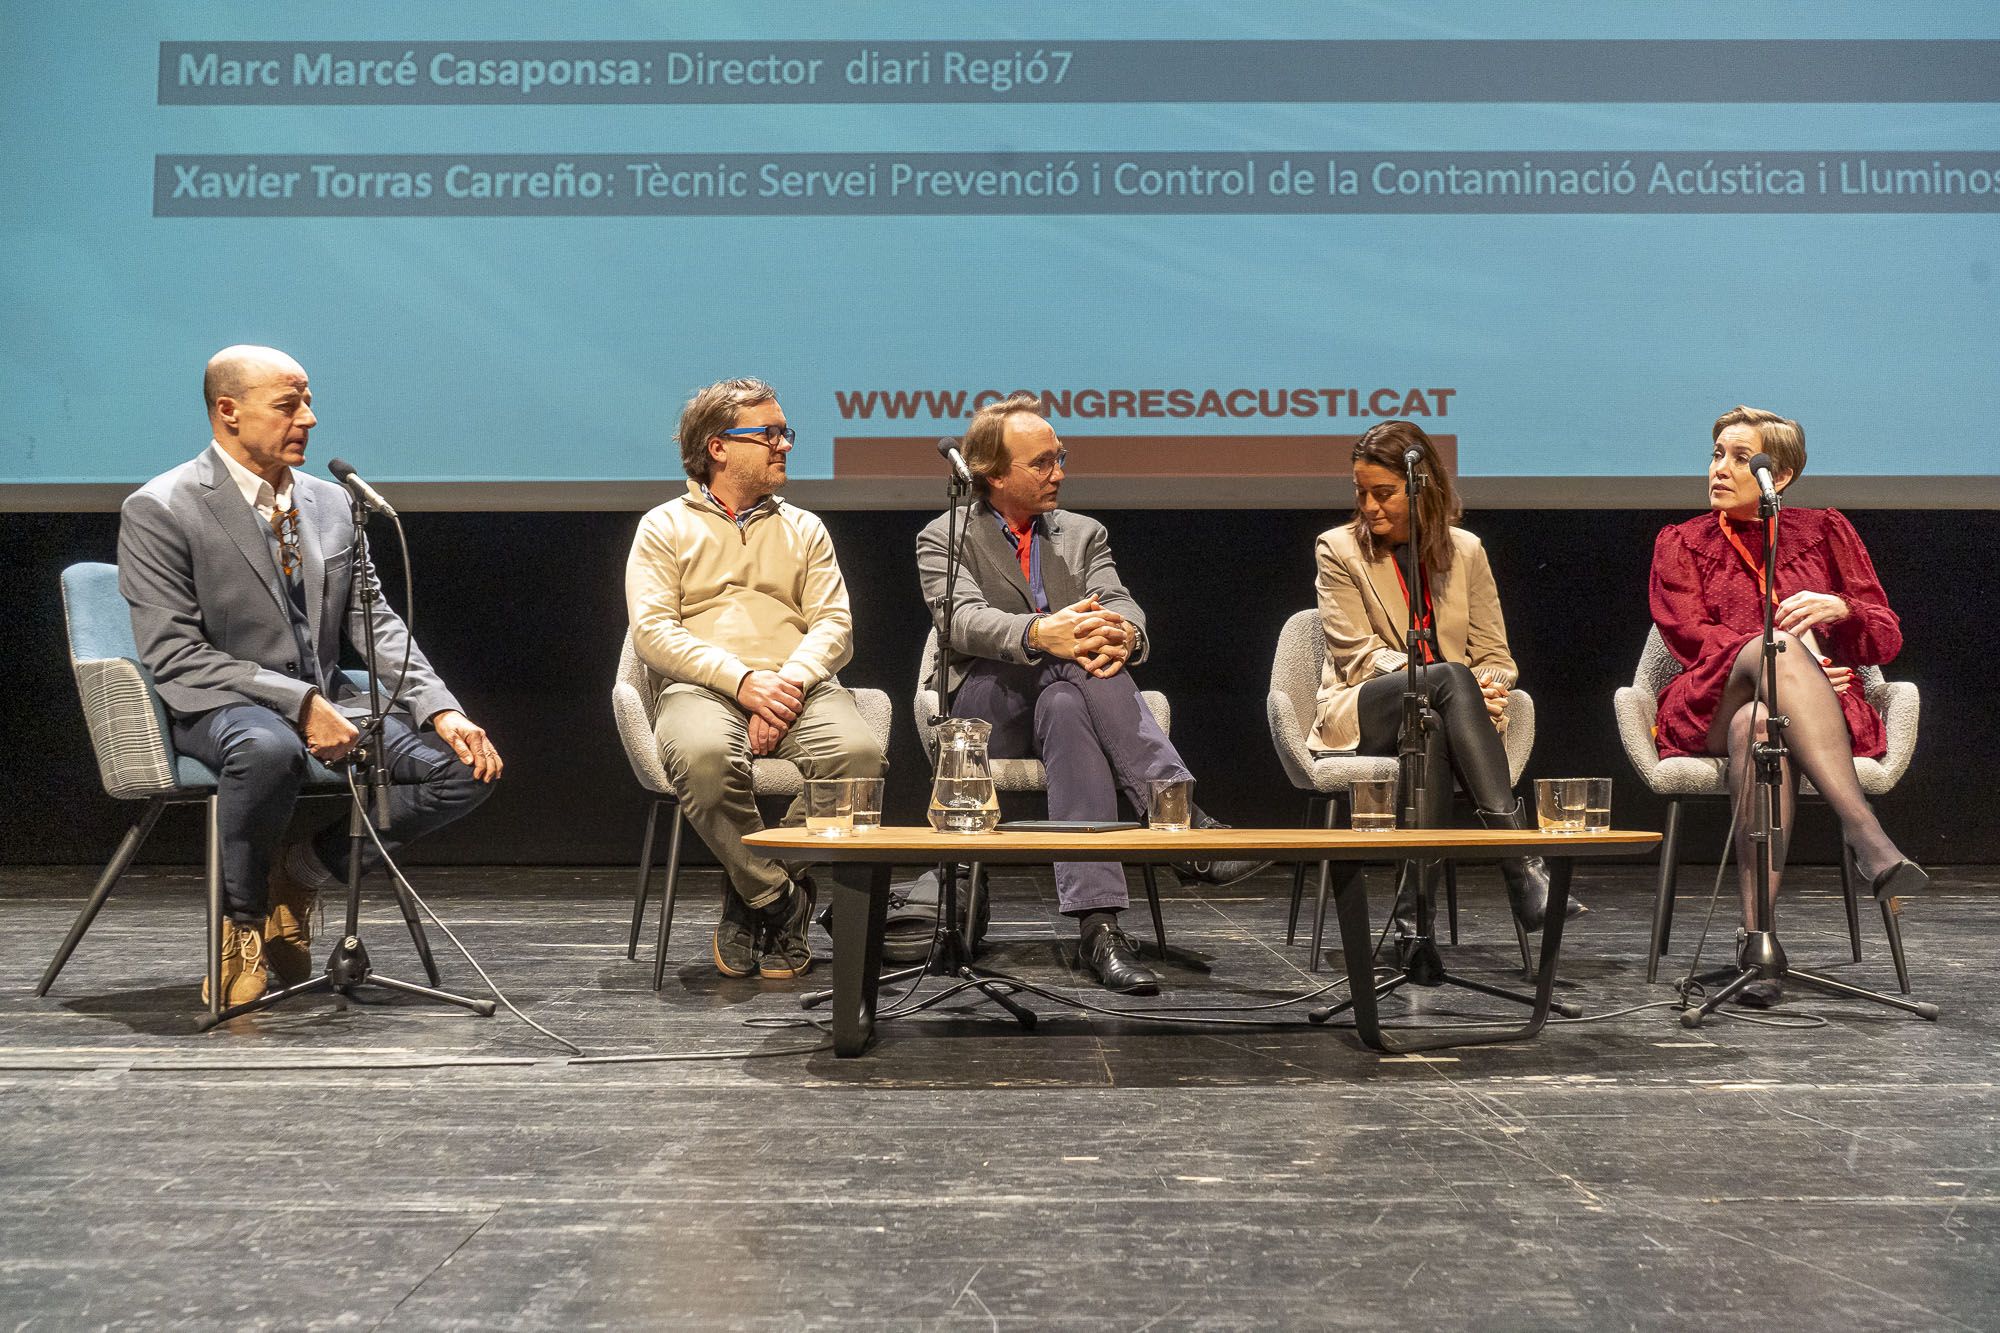 Les millors imatges de l’Acusticat, el 5è Congrés d’Acústica de Catalunya celebrat a Manresa